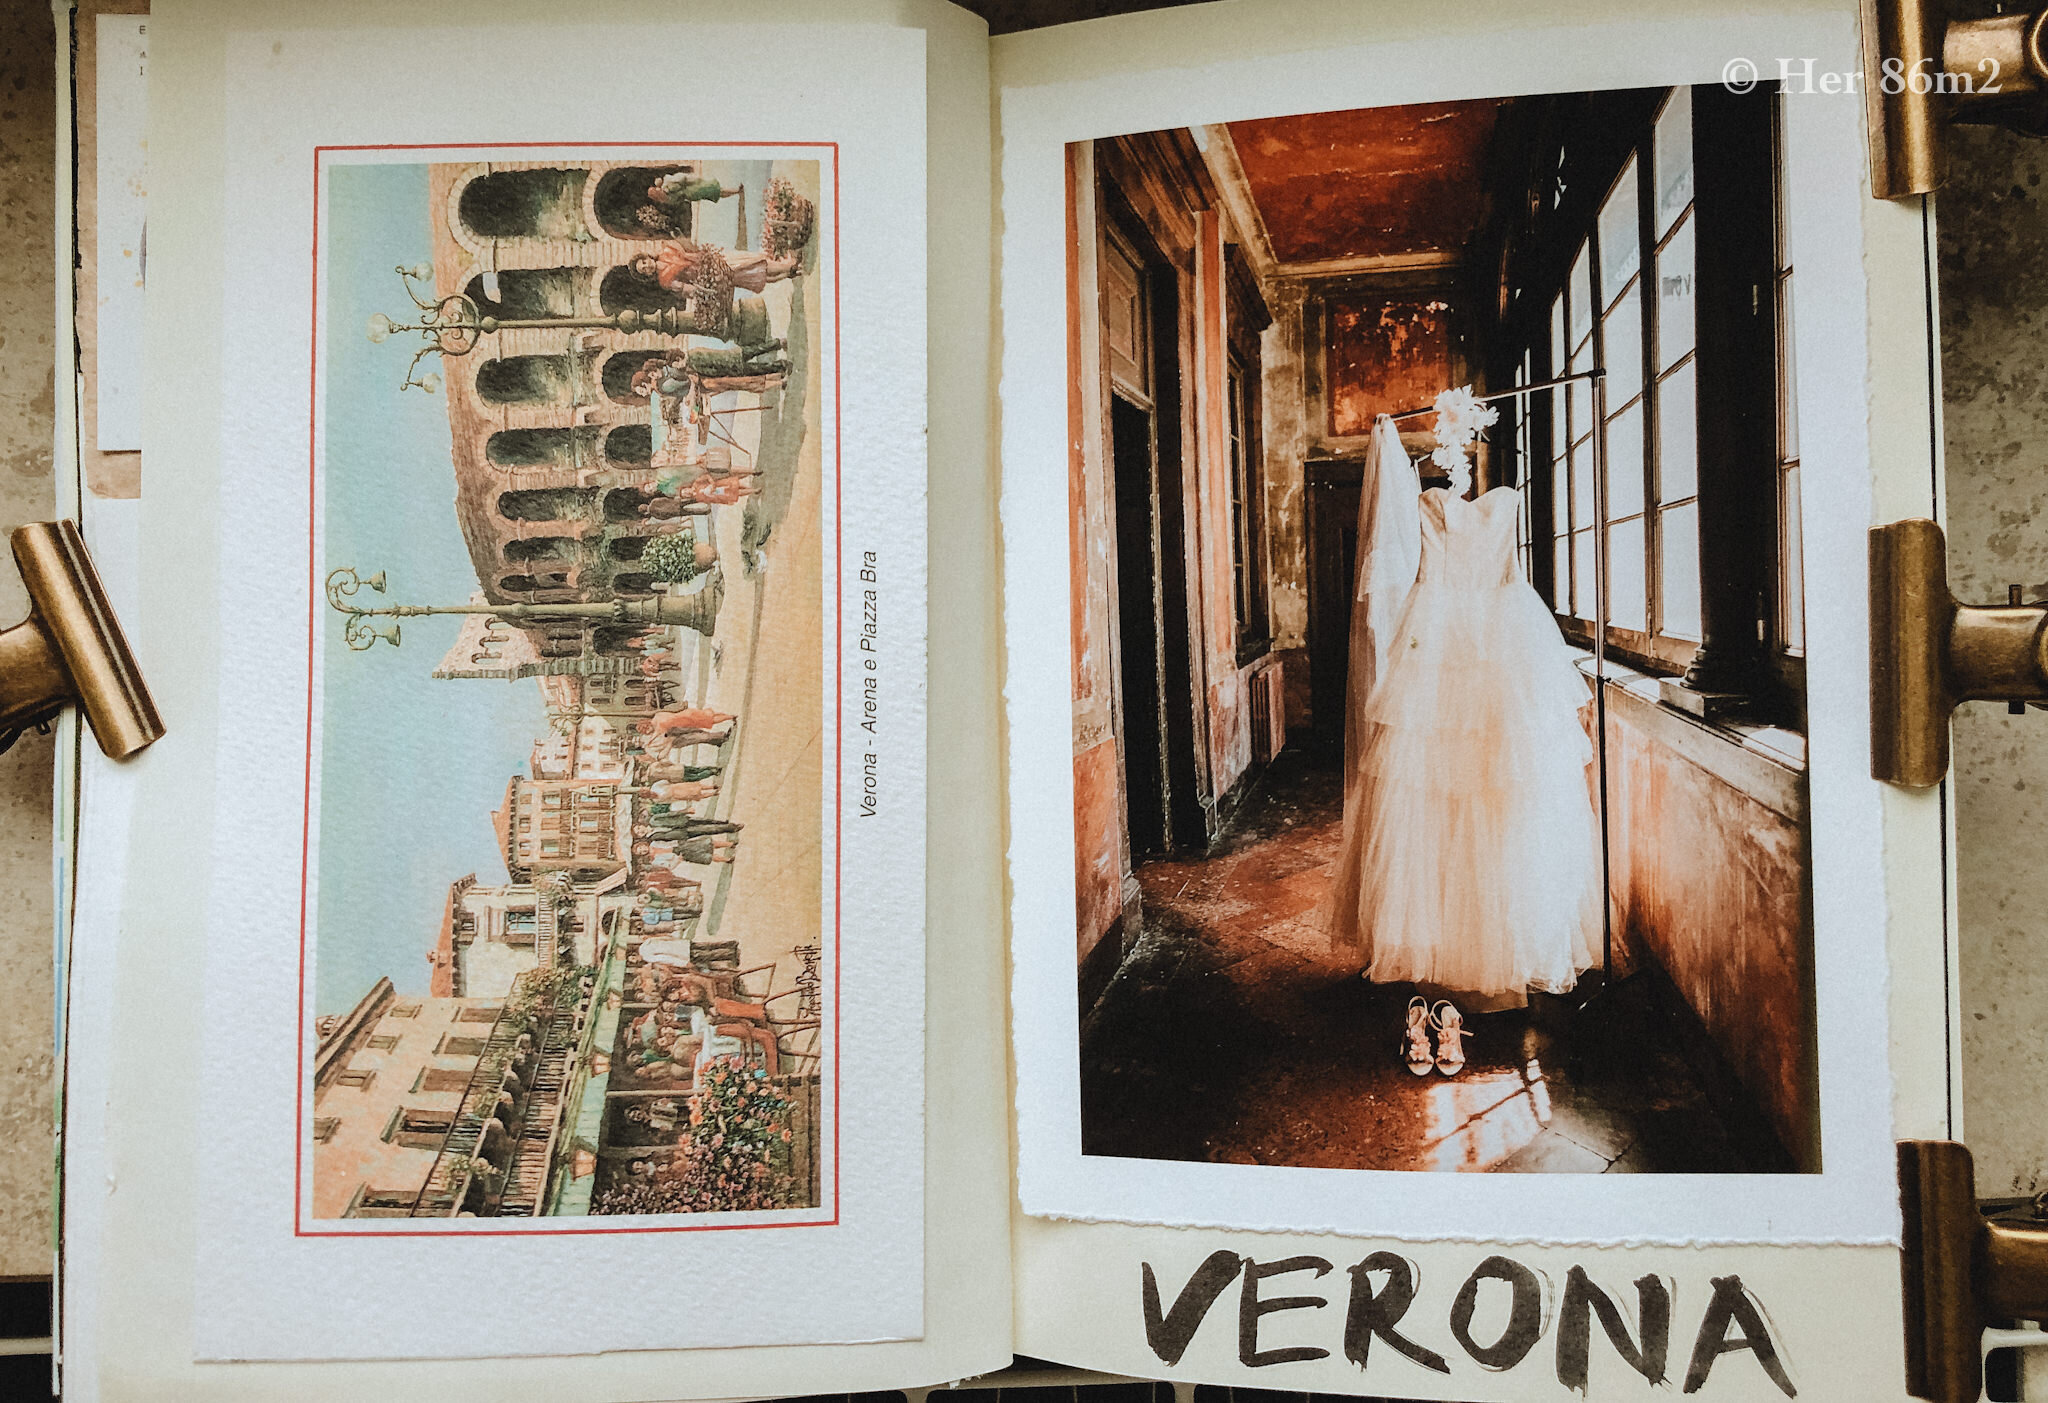  Verona - lần chụp đầu tiên hợp tác cùng Manager của Cartier. 